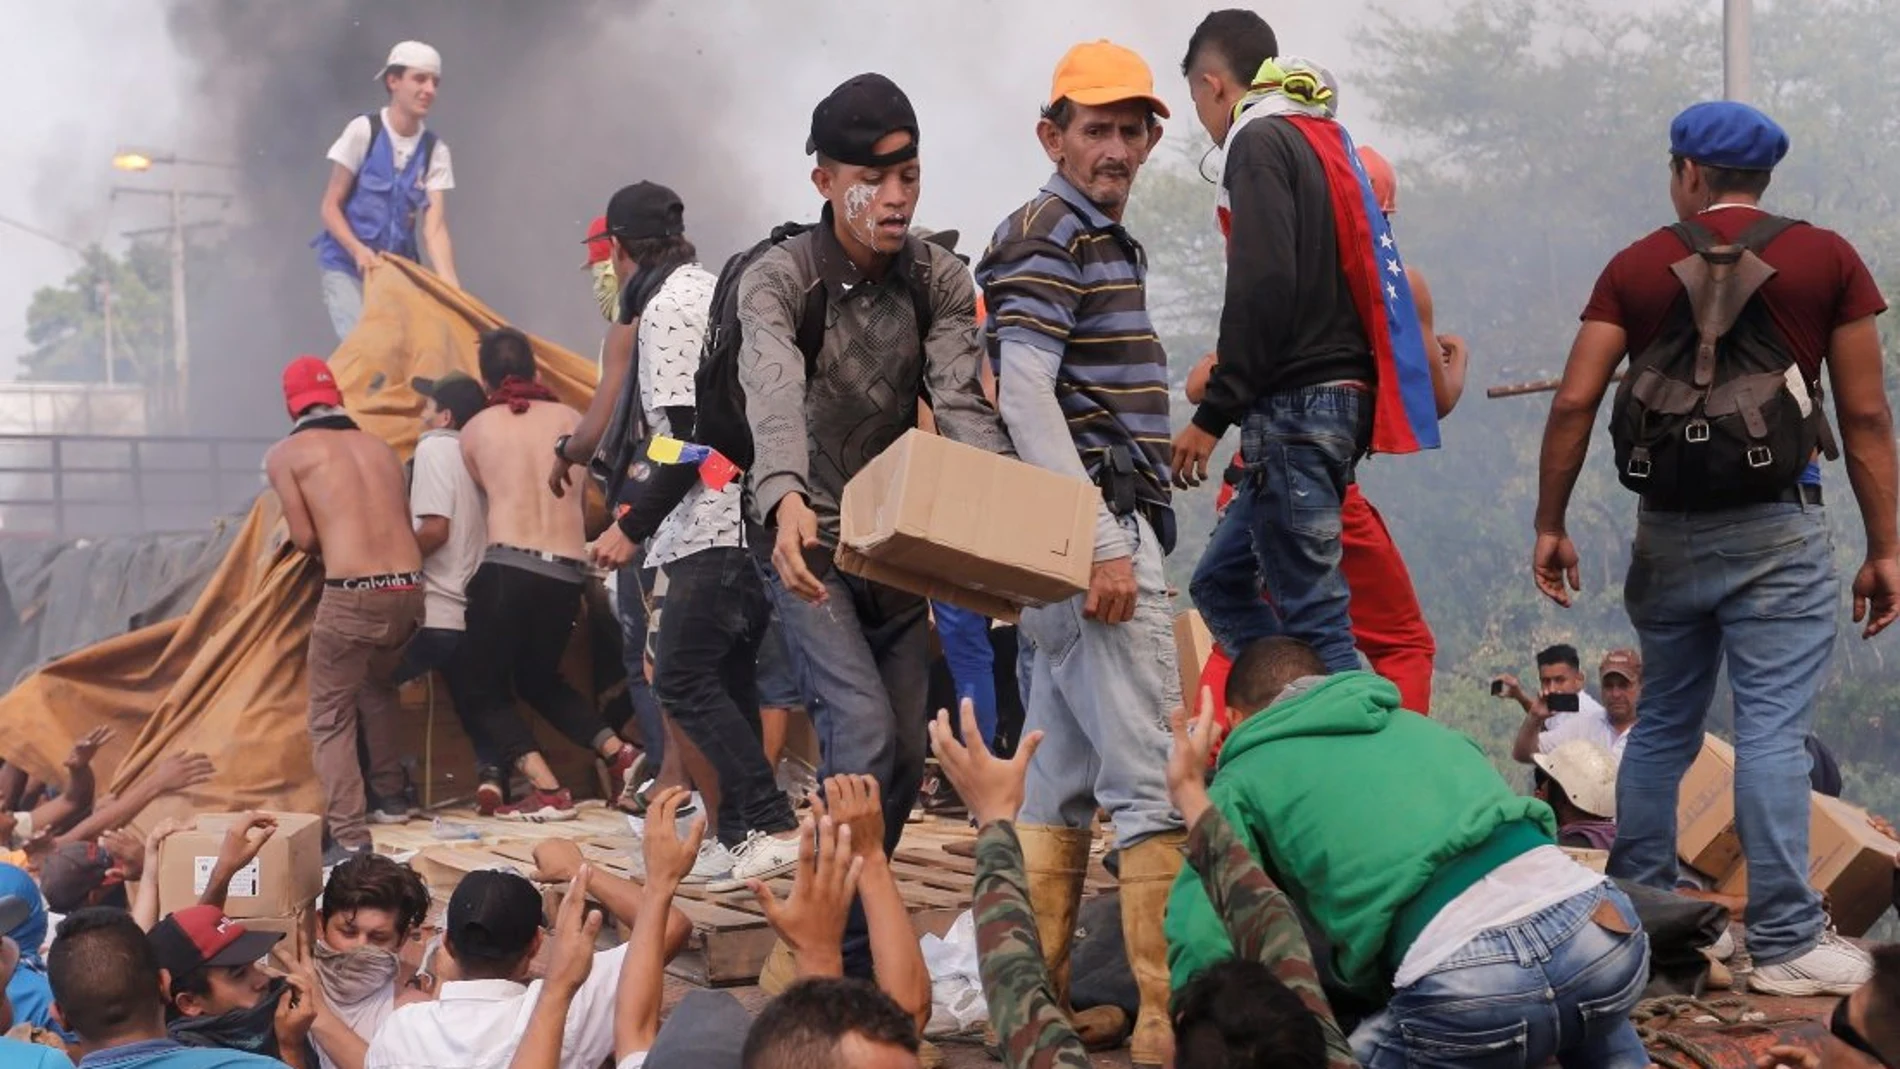 Personas intentan sacar parte de la ayuda humanitaria que se encuentra un camión que fue quemado